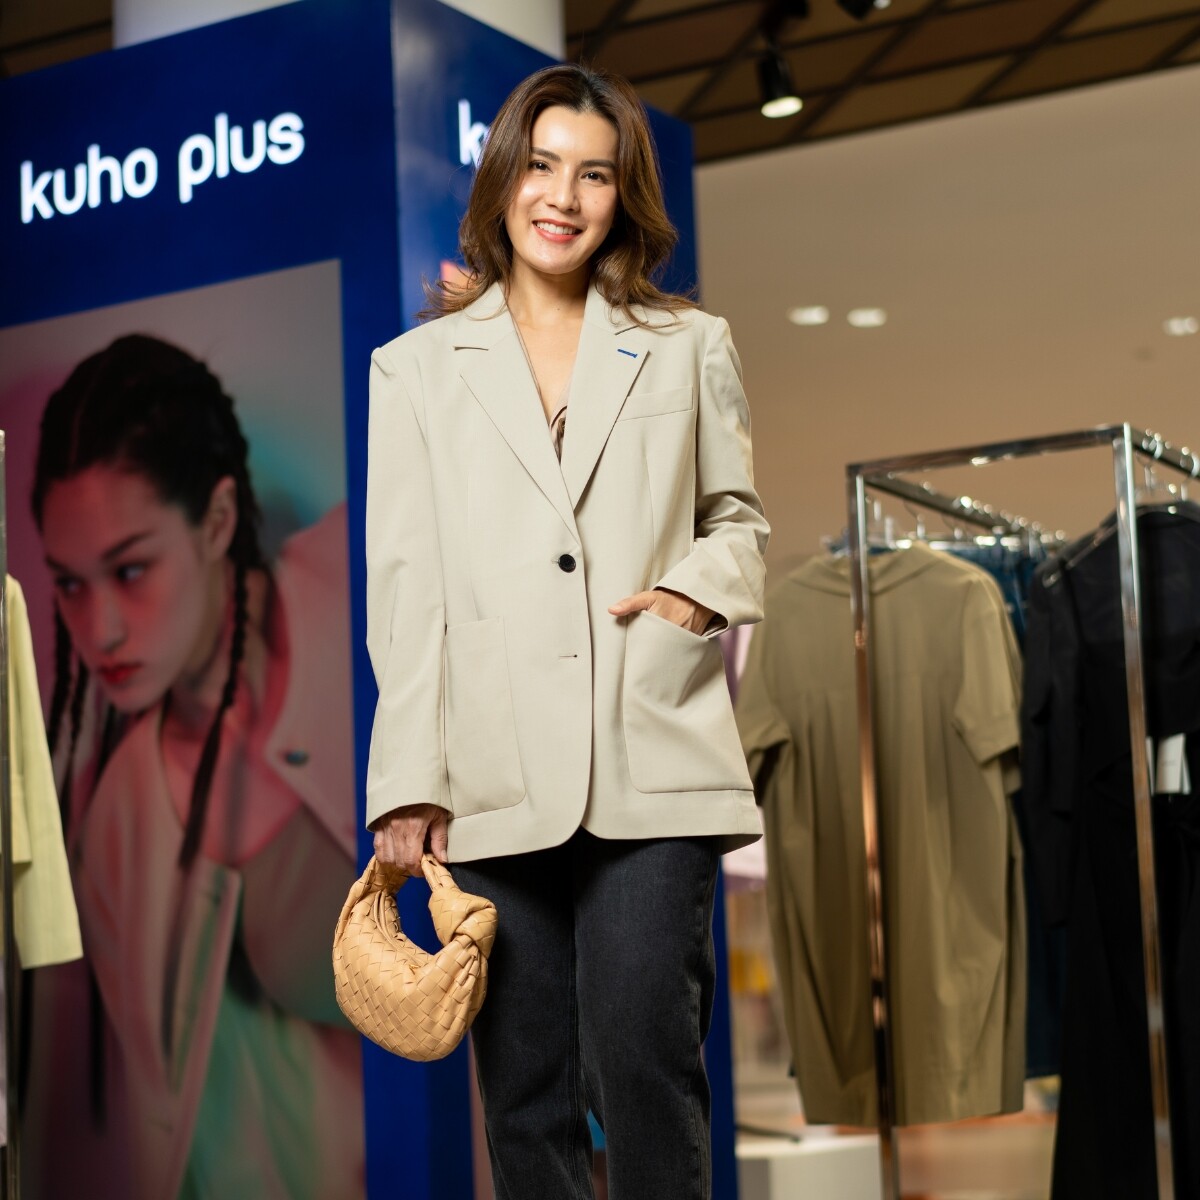 สยามดิสคัฟเวอรี่ นำเข้าแบรนด์ Kuho Plus Pop up แห่งแรกในไทย